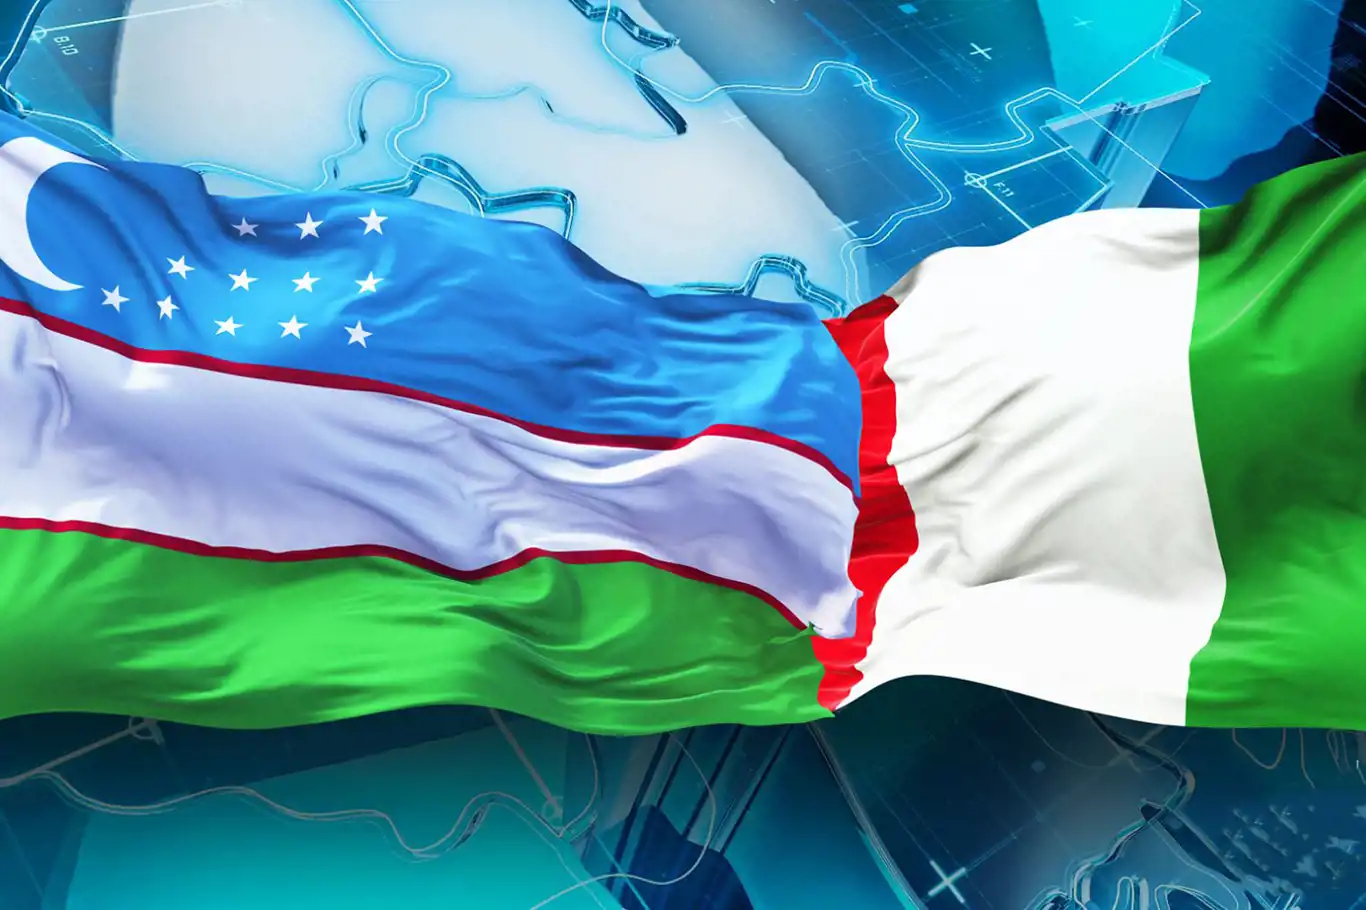 İtalya ile Özbekistan arasında "stratejik ortaklık" anlaşması